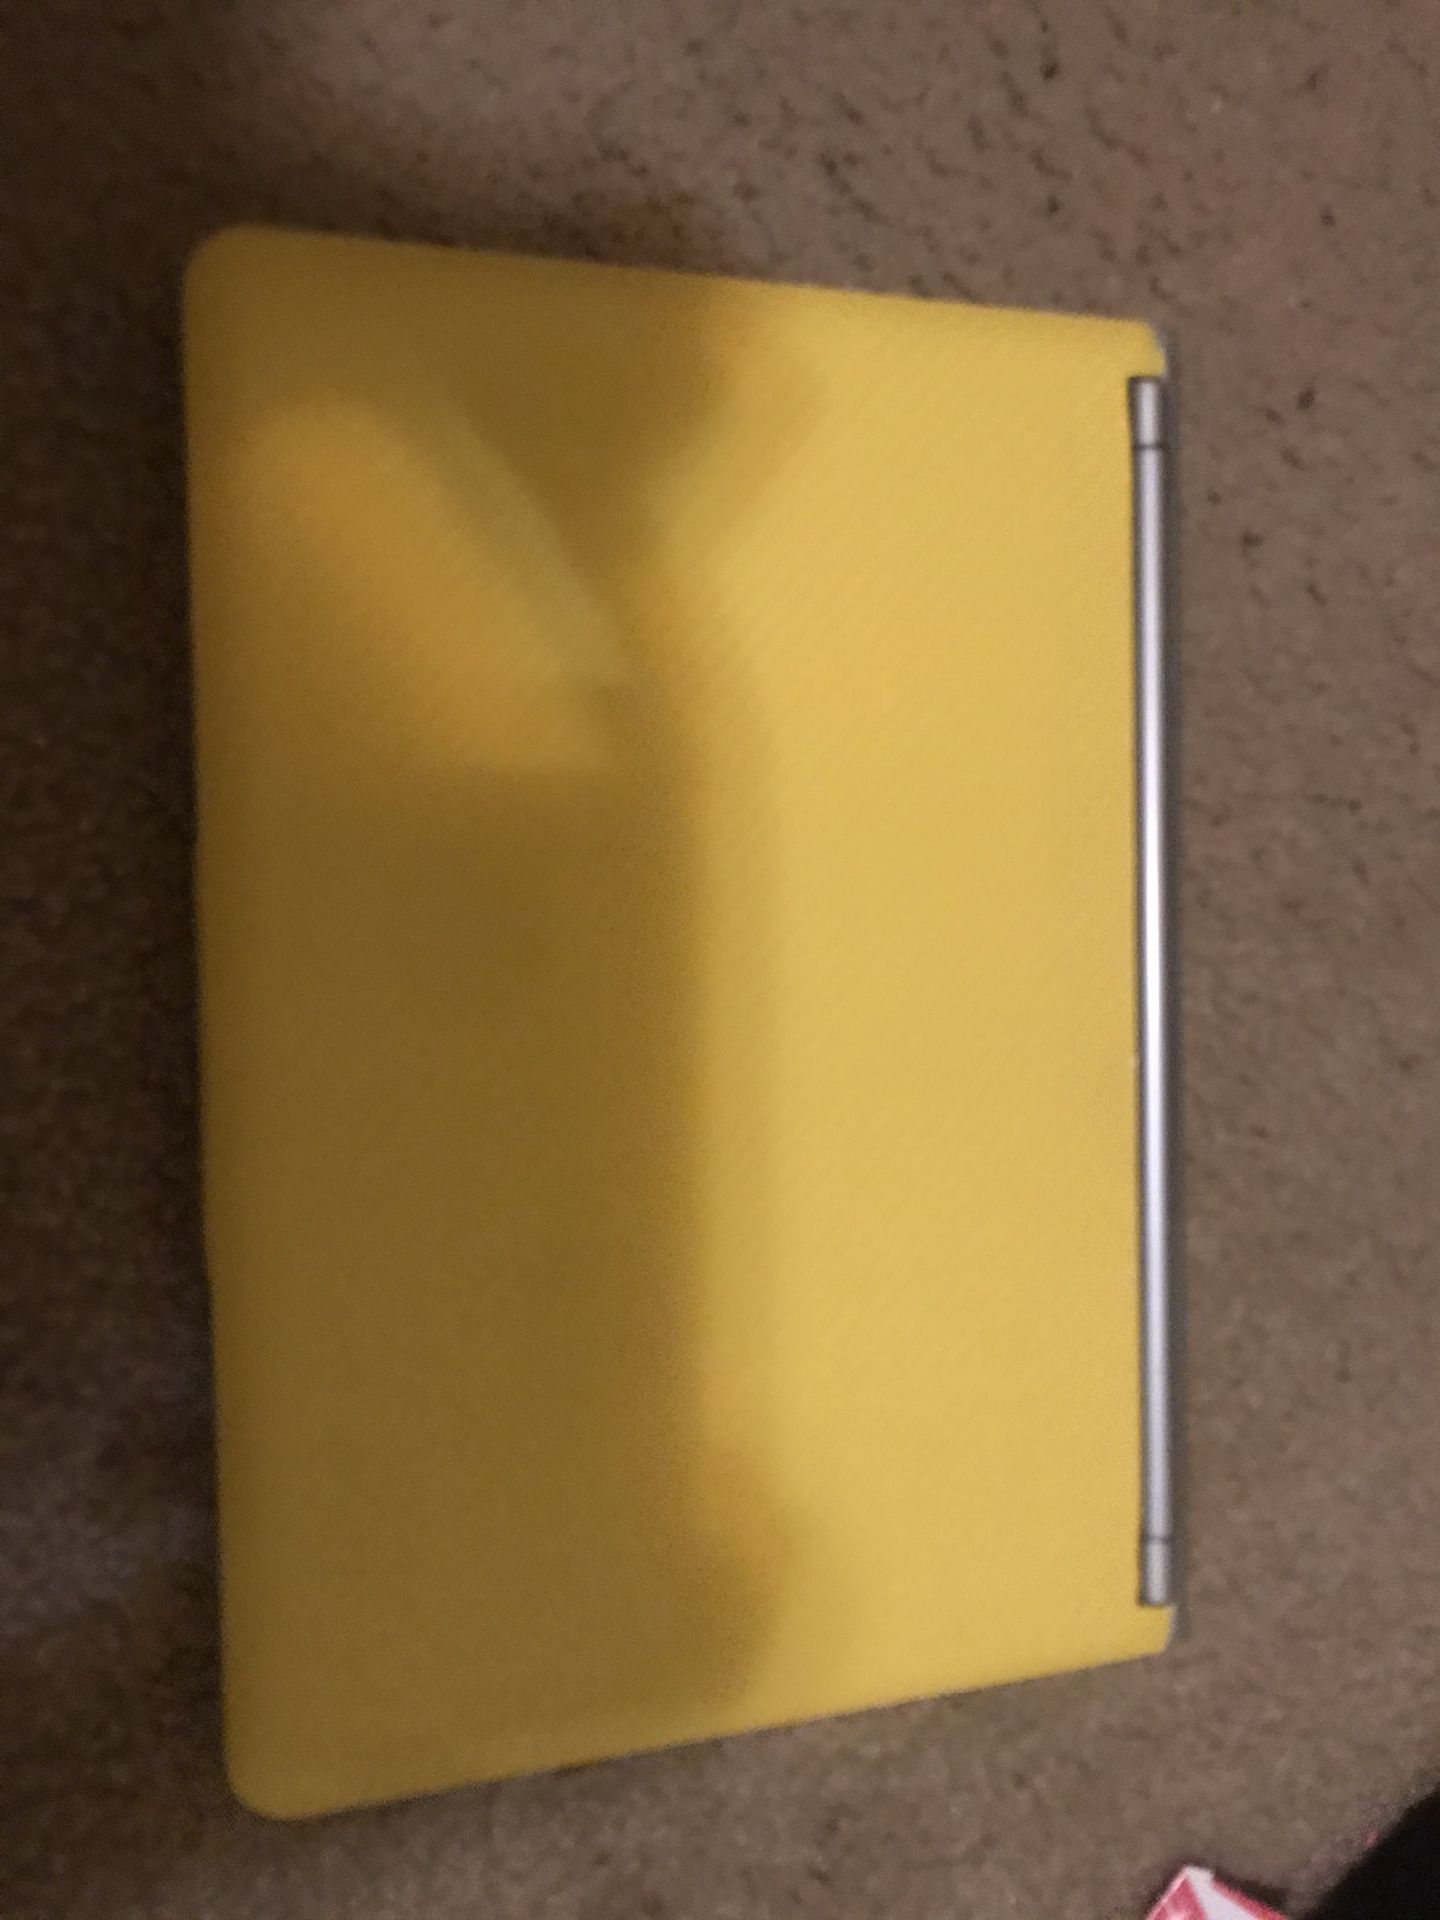 Yellow chromebook